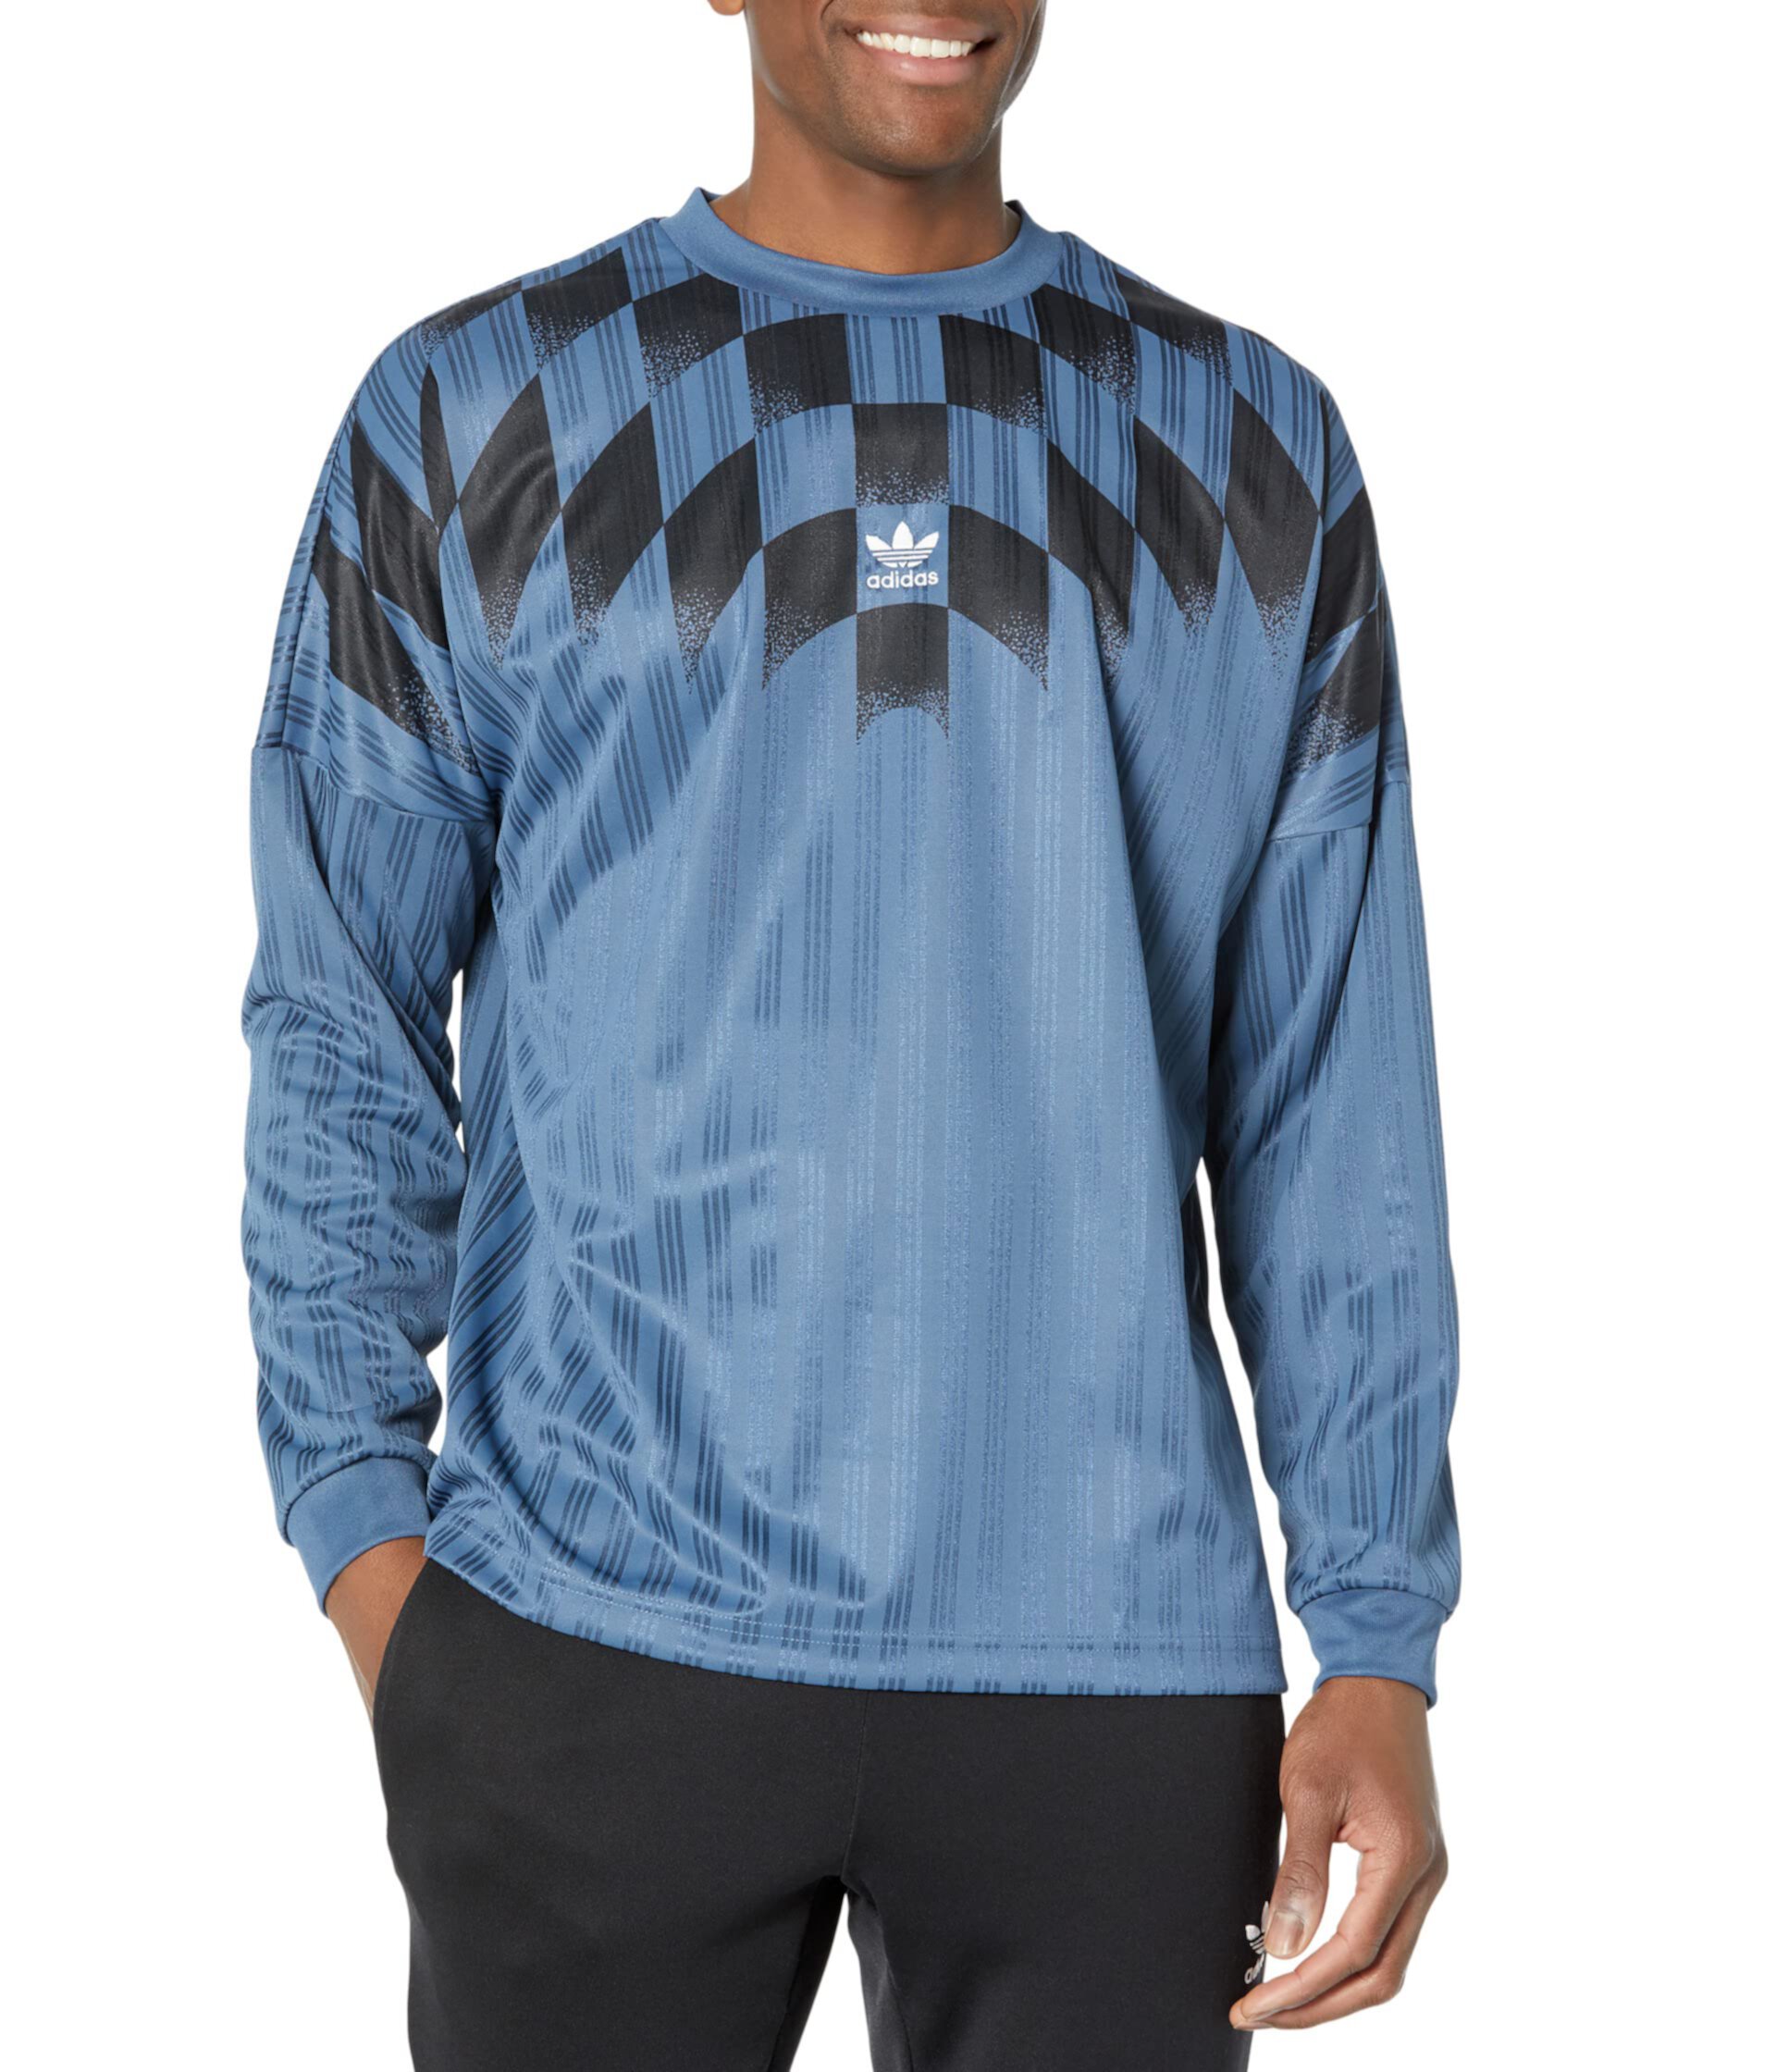 Джерси Rekive с длинными рукавами и графикой Adidas